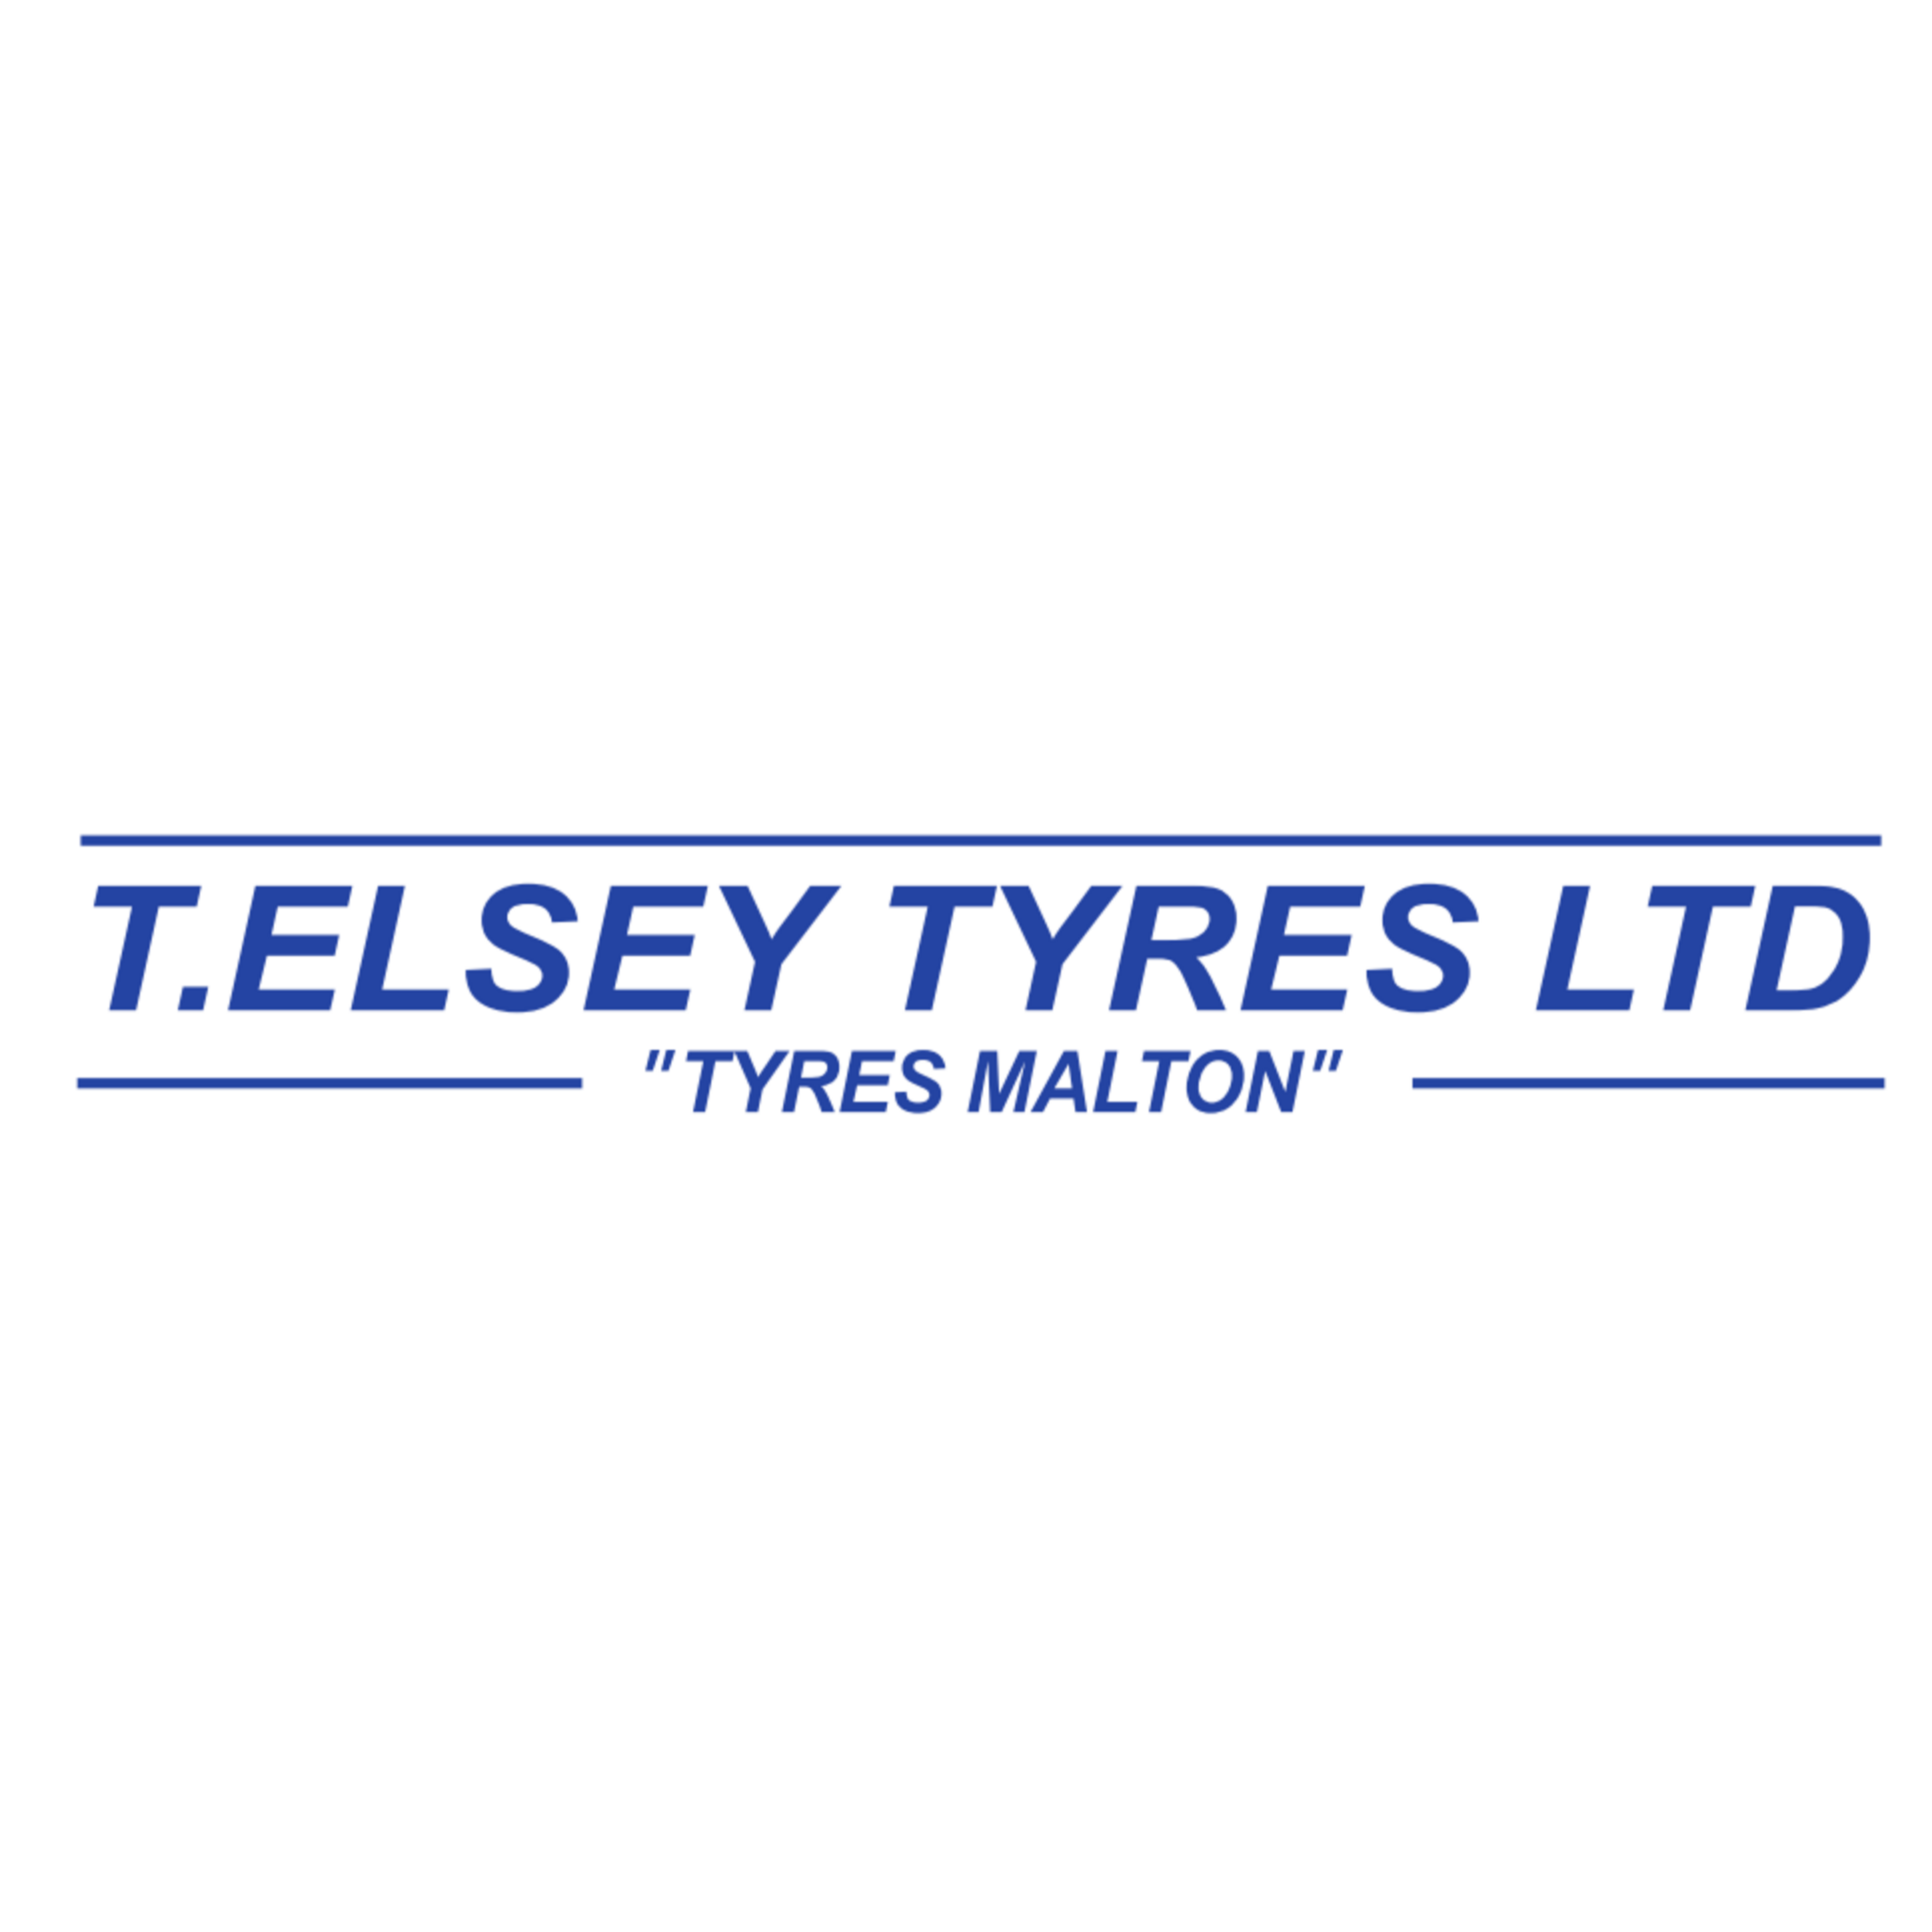 T.Elsey Tyres Ltd | Malton Tyres | Logo T.Elsey Tyres Ltd Malton 01653 694667